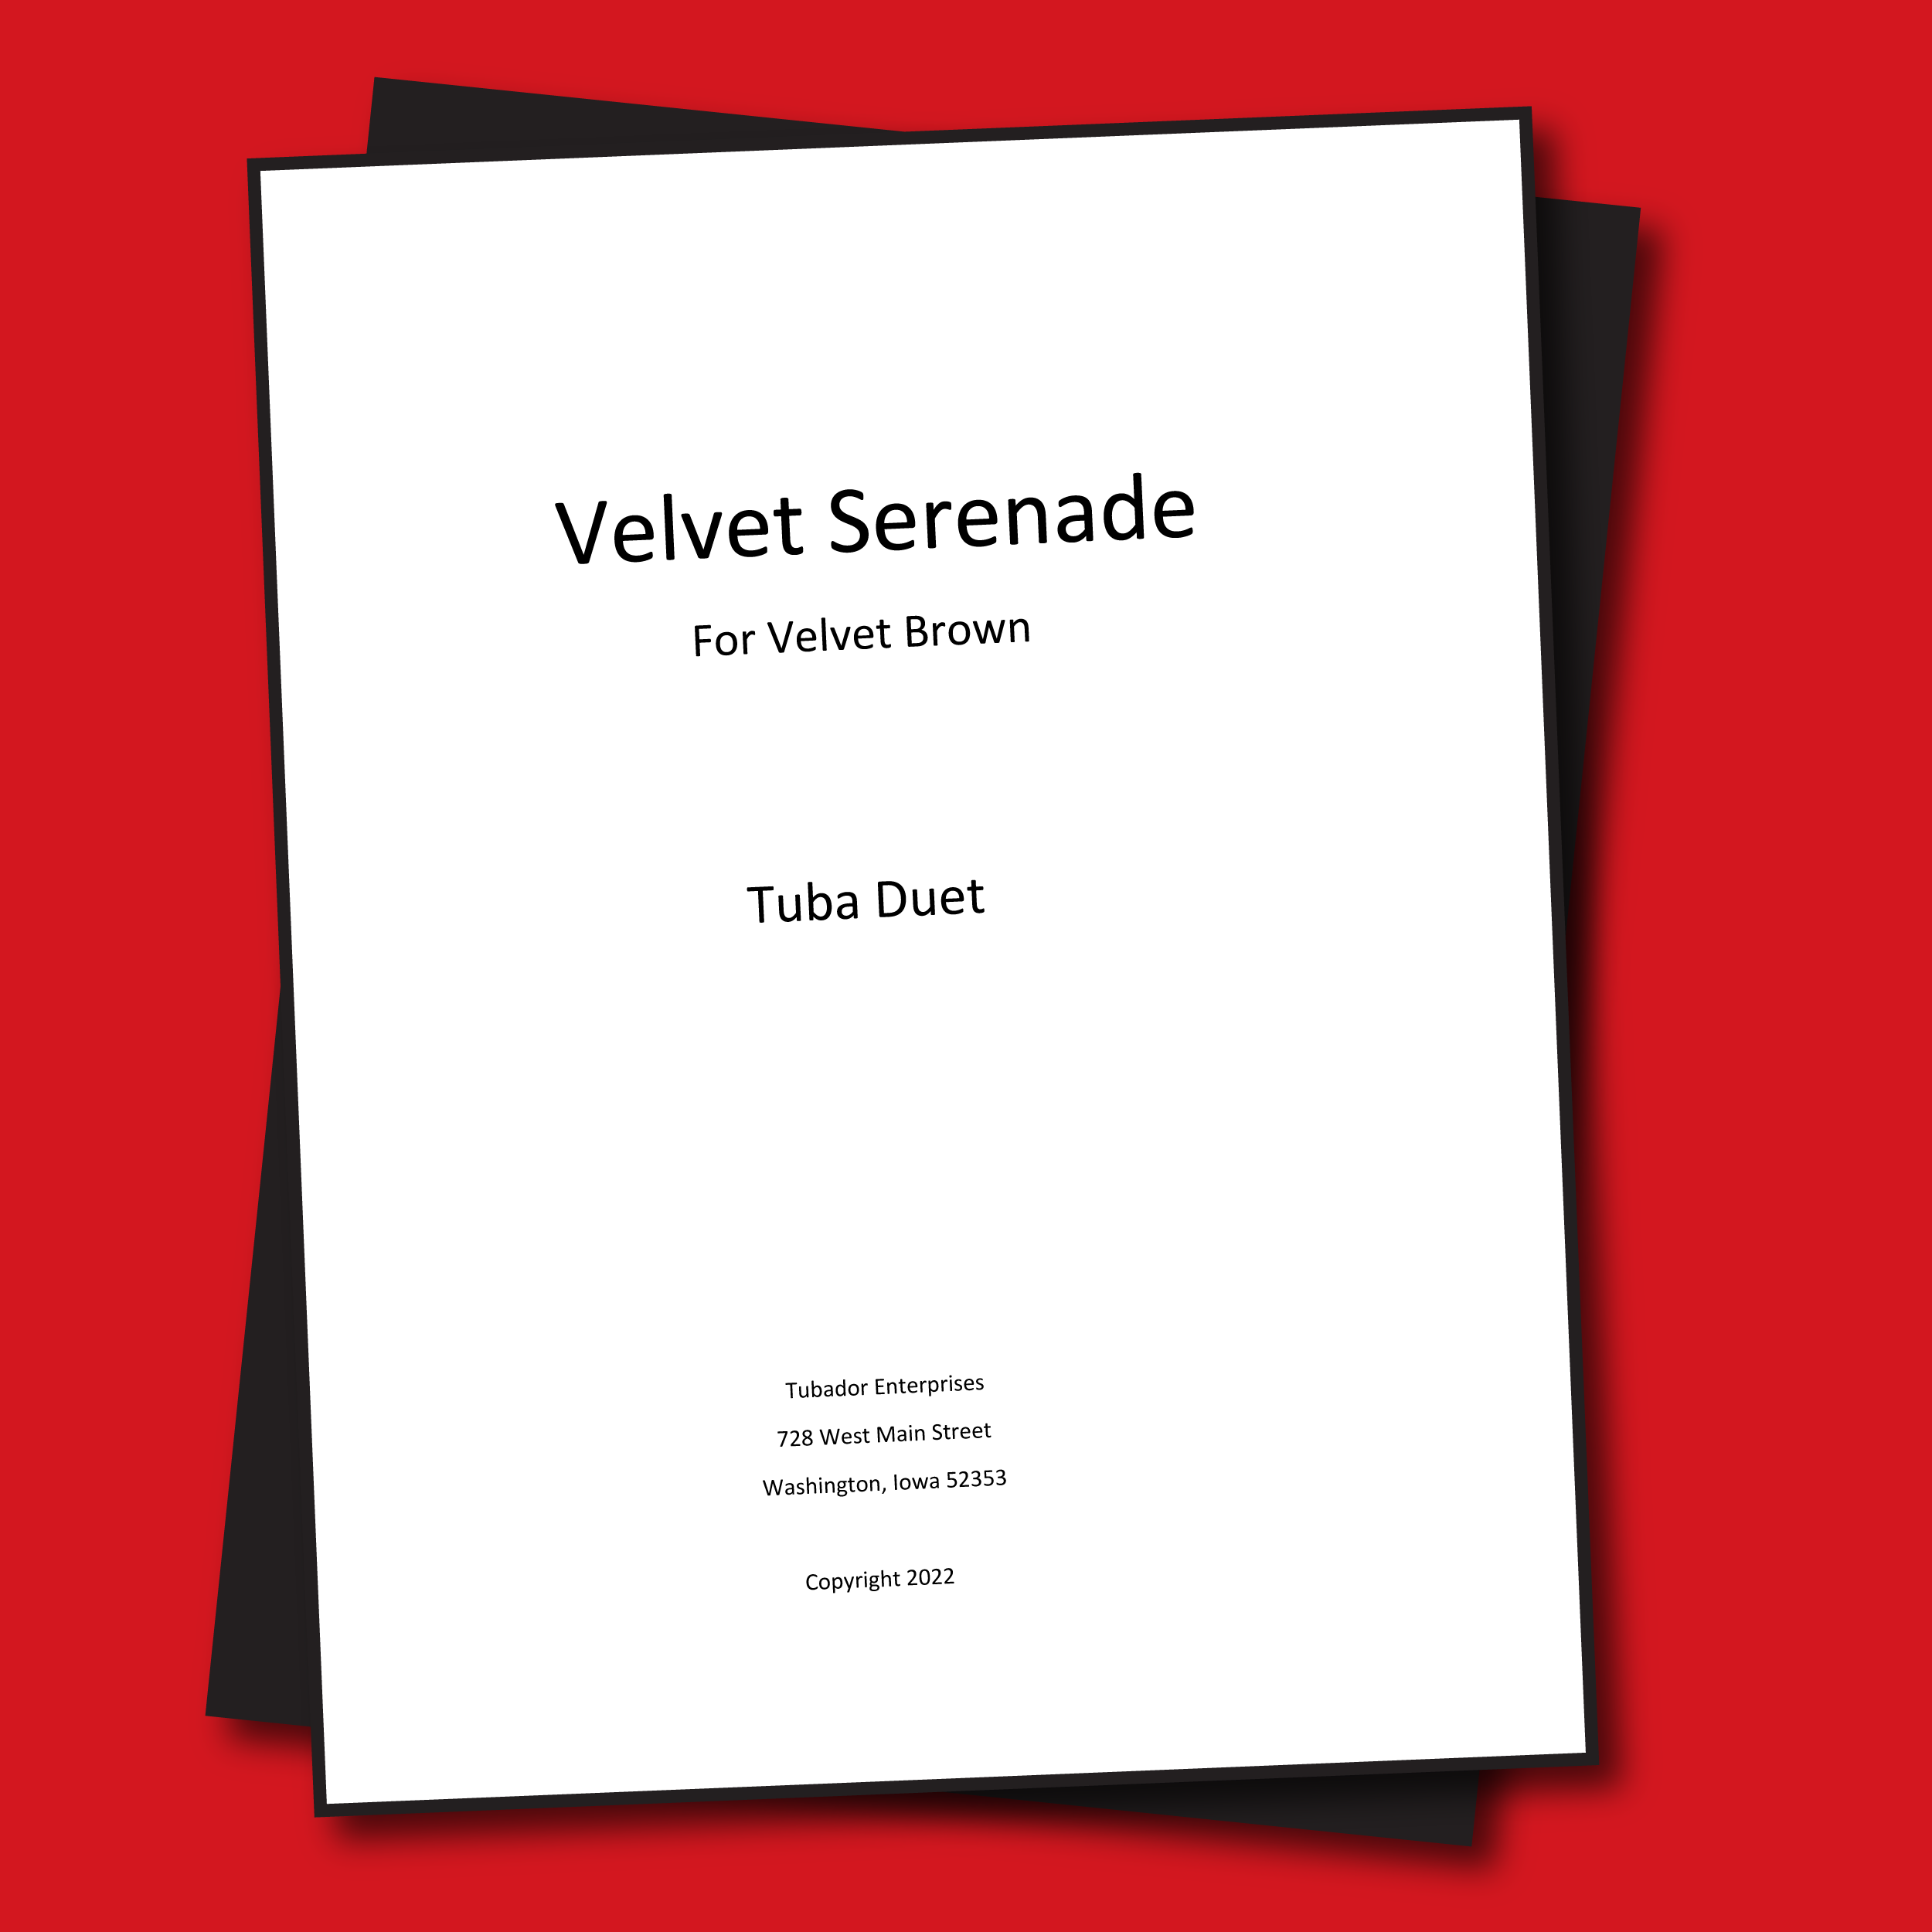 Velvet Serenade